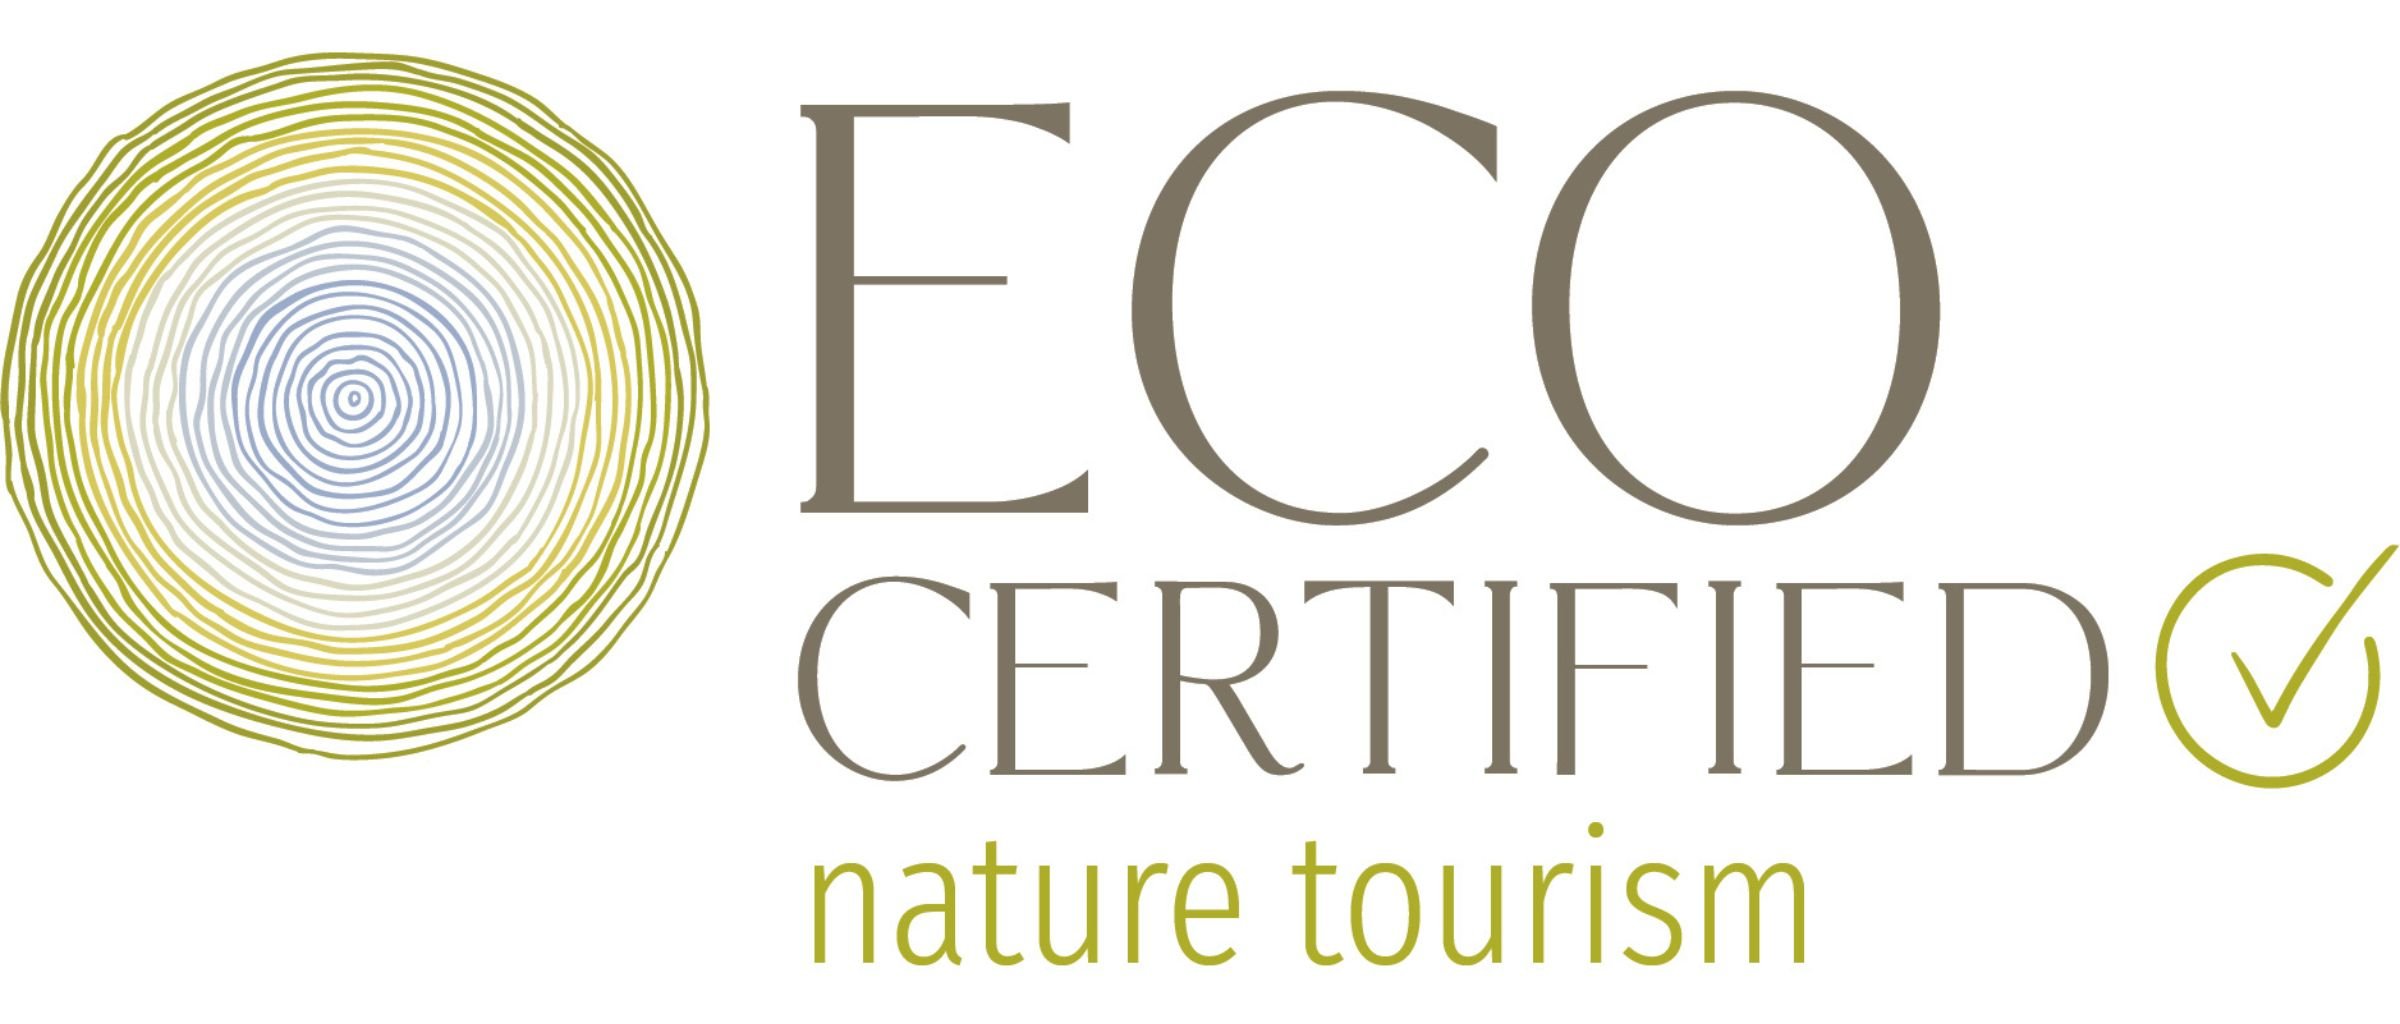 Eco Tourism Logo - NEW (1)